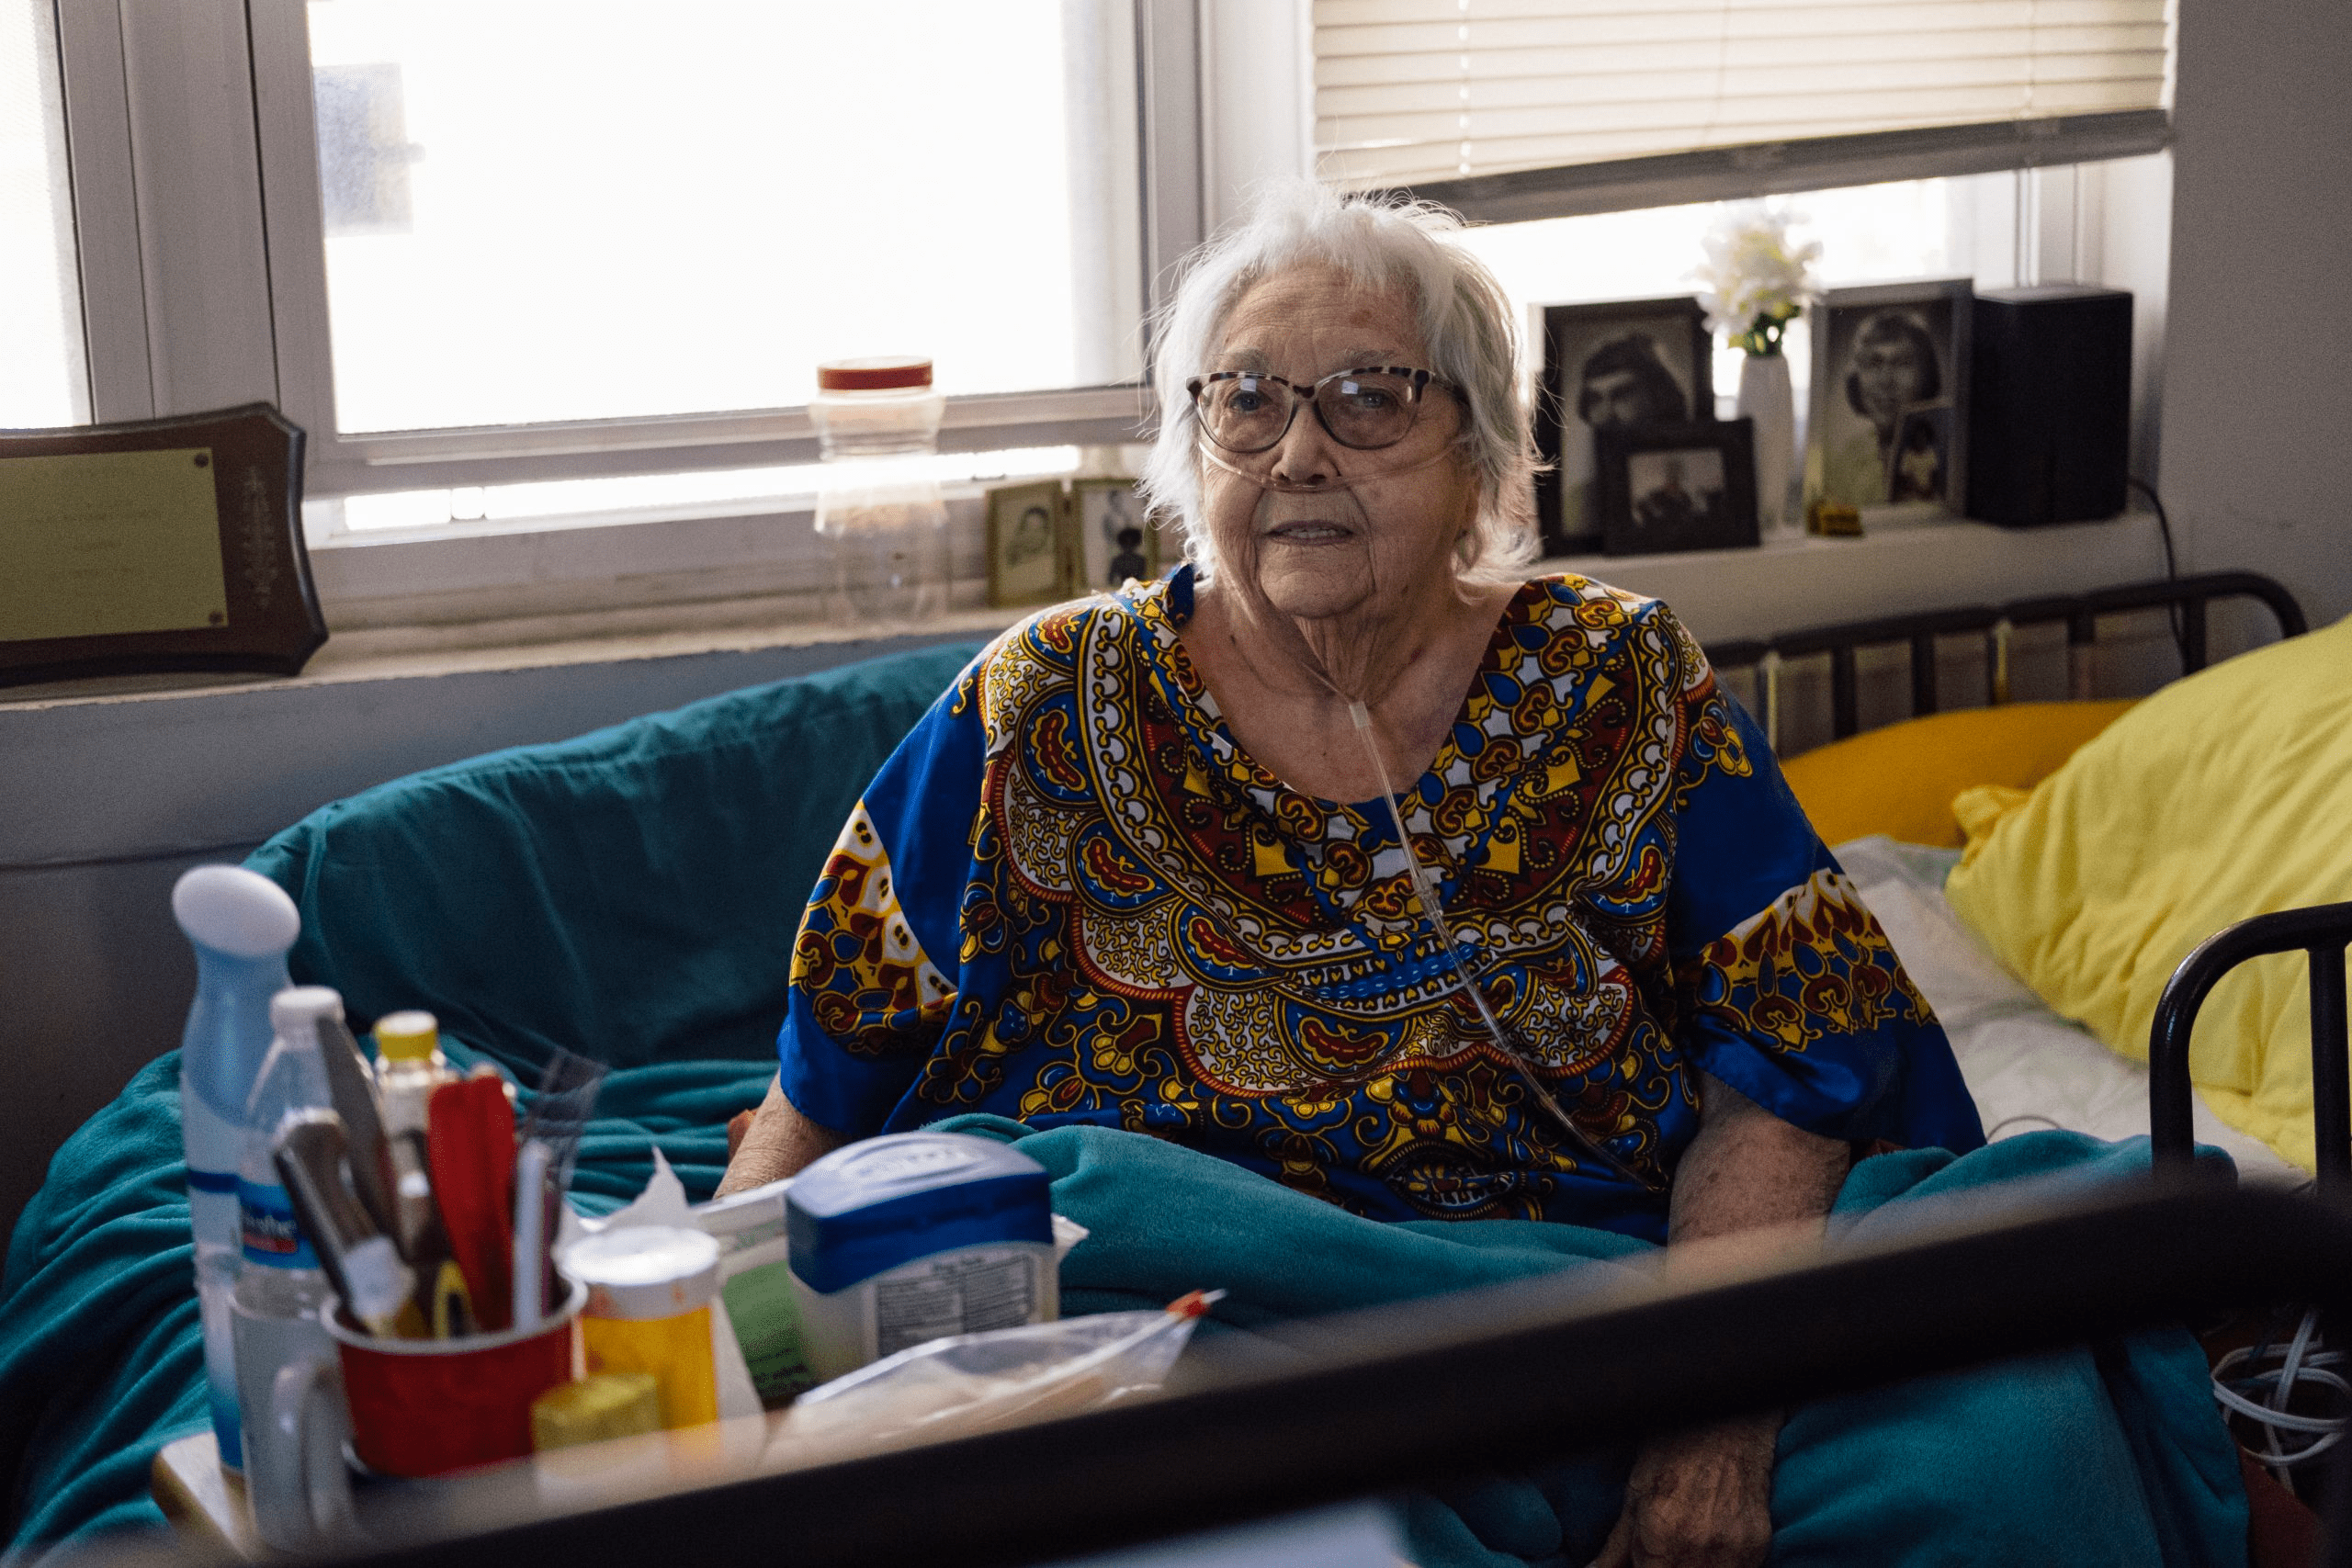 Caroline Dodge lleva 40 años viviendo en viviendas dispersas de la CHA en Old Town y Lincoln Park. (Crédito: Jim Vondruska/Block Club Chicago)